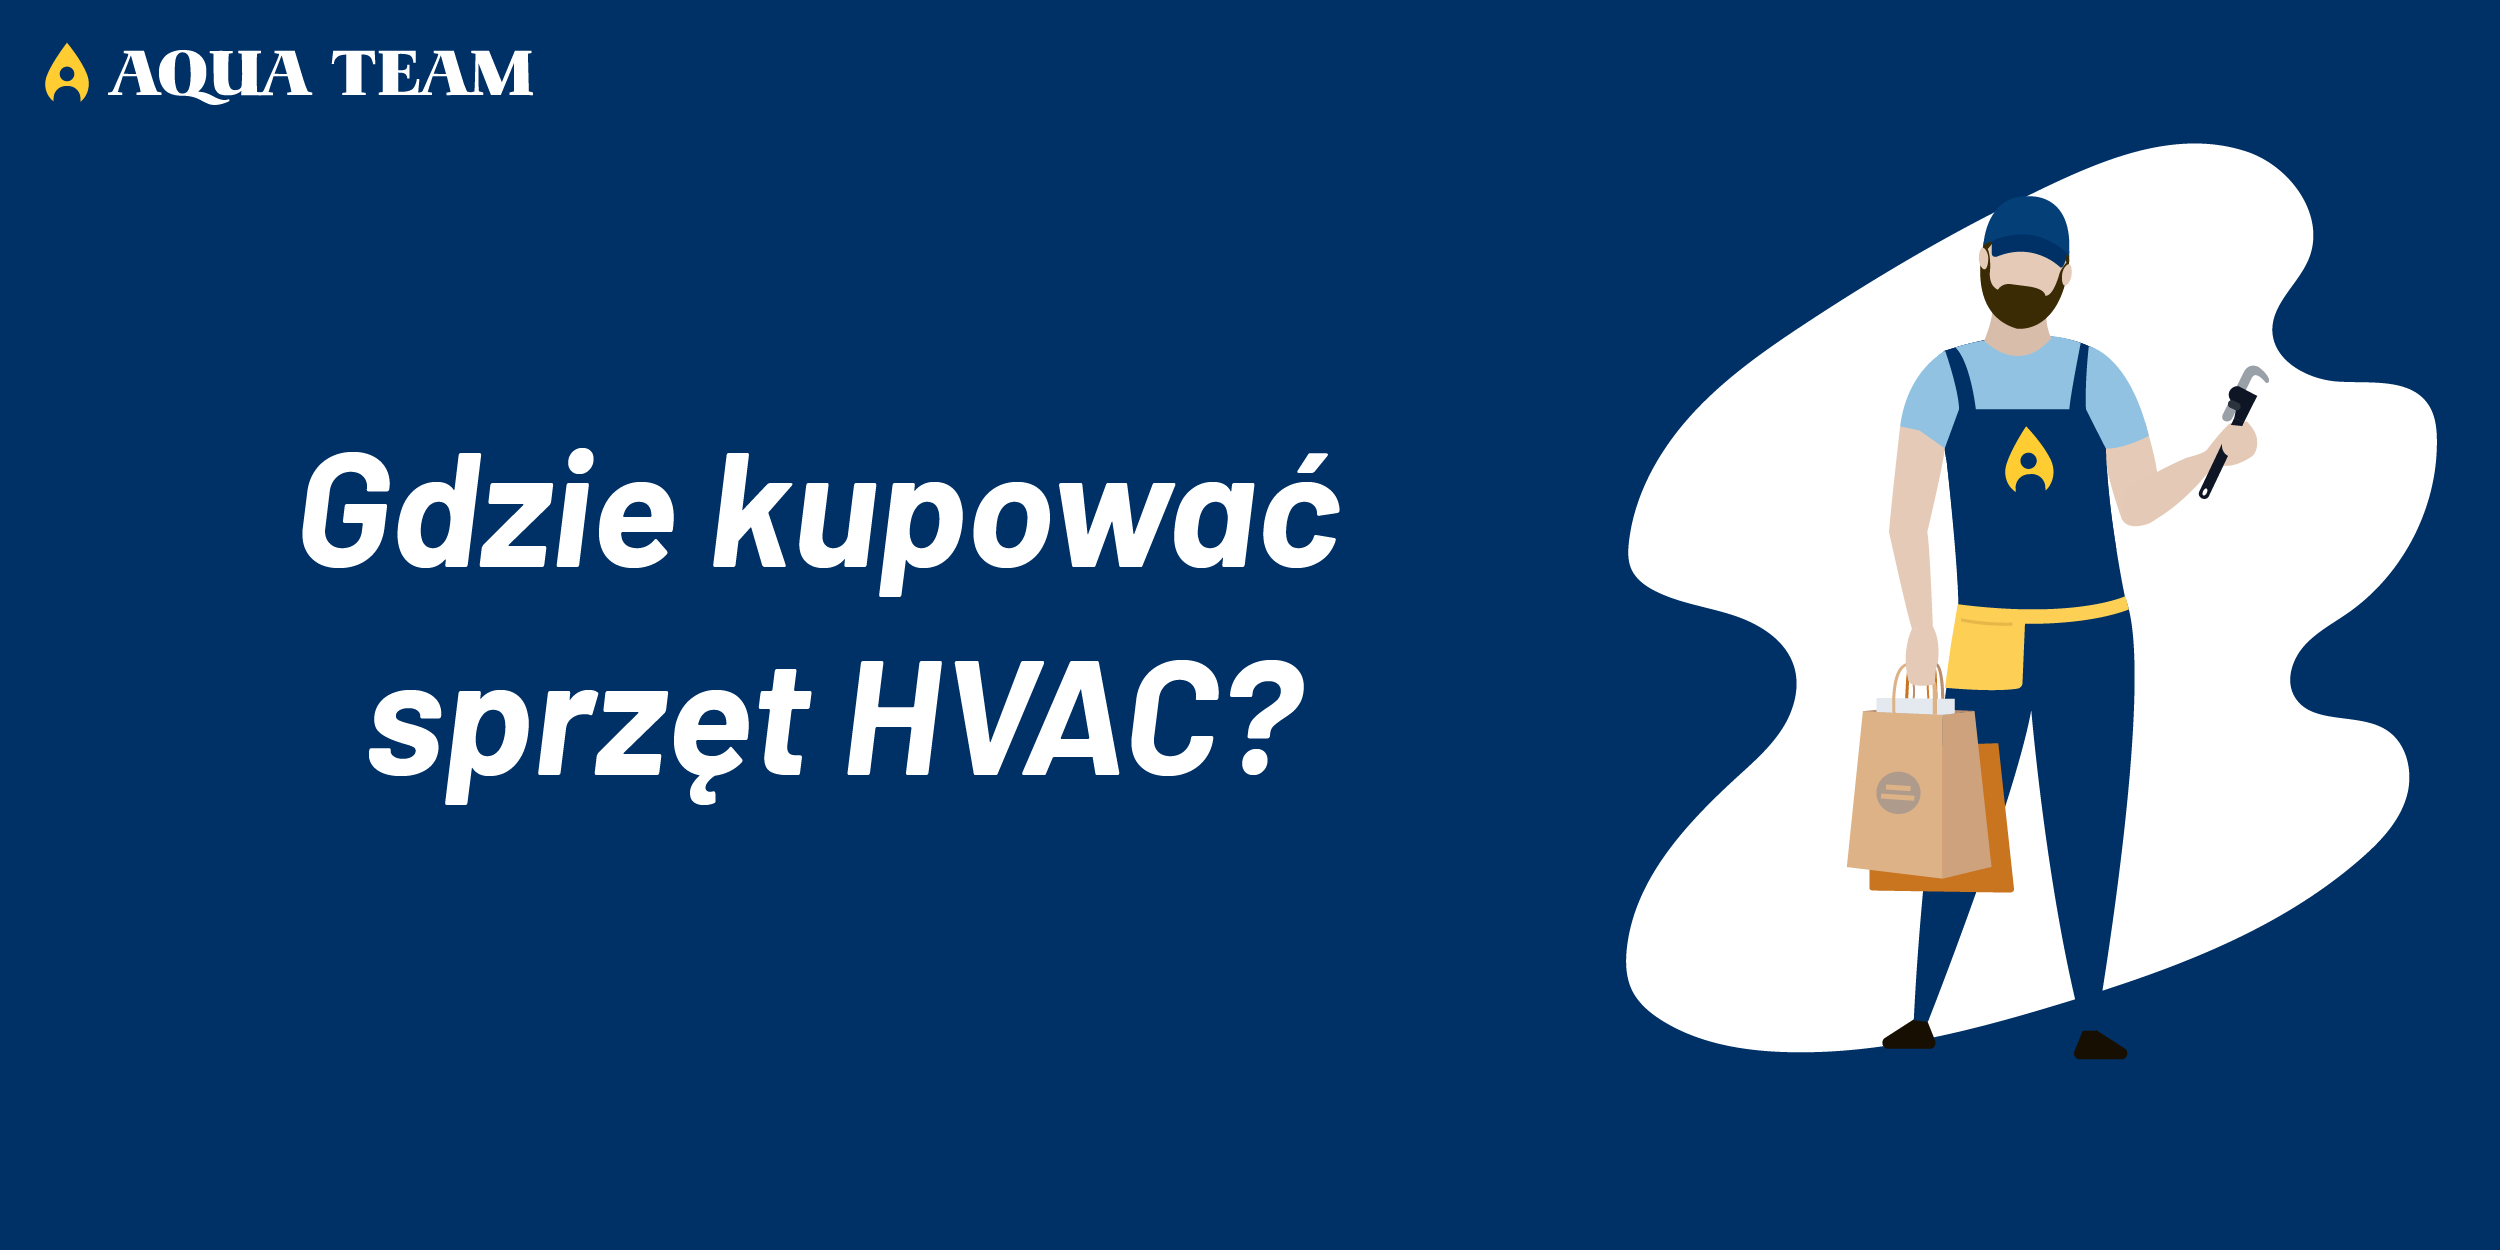 Hurtownie specjalistyczne vs markety budowlane: Gdzie Kupować Sprzęt HVAC?